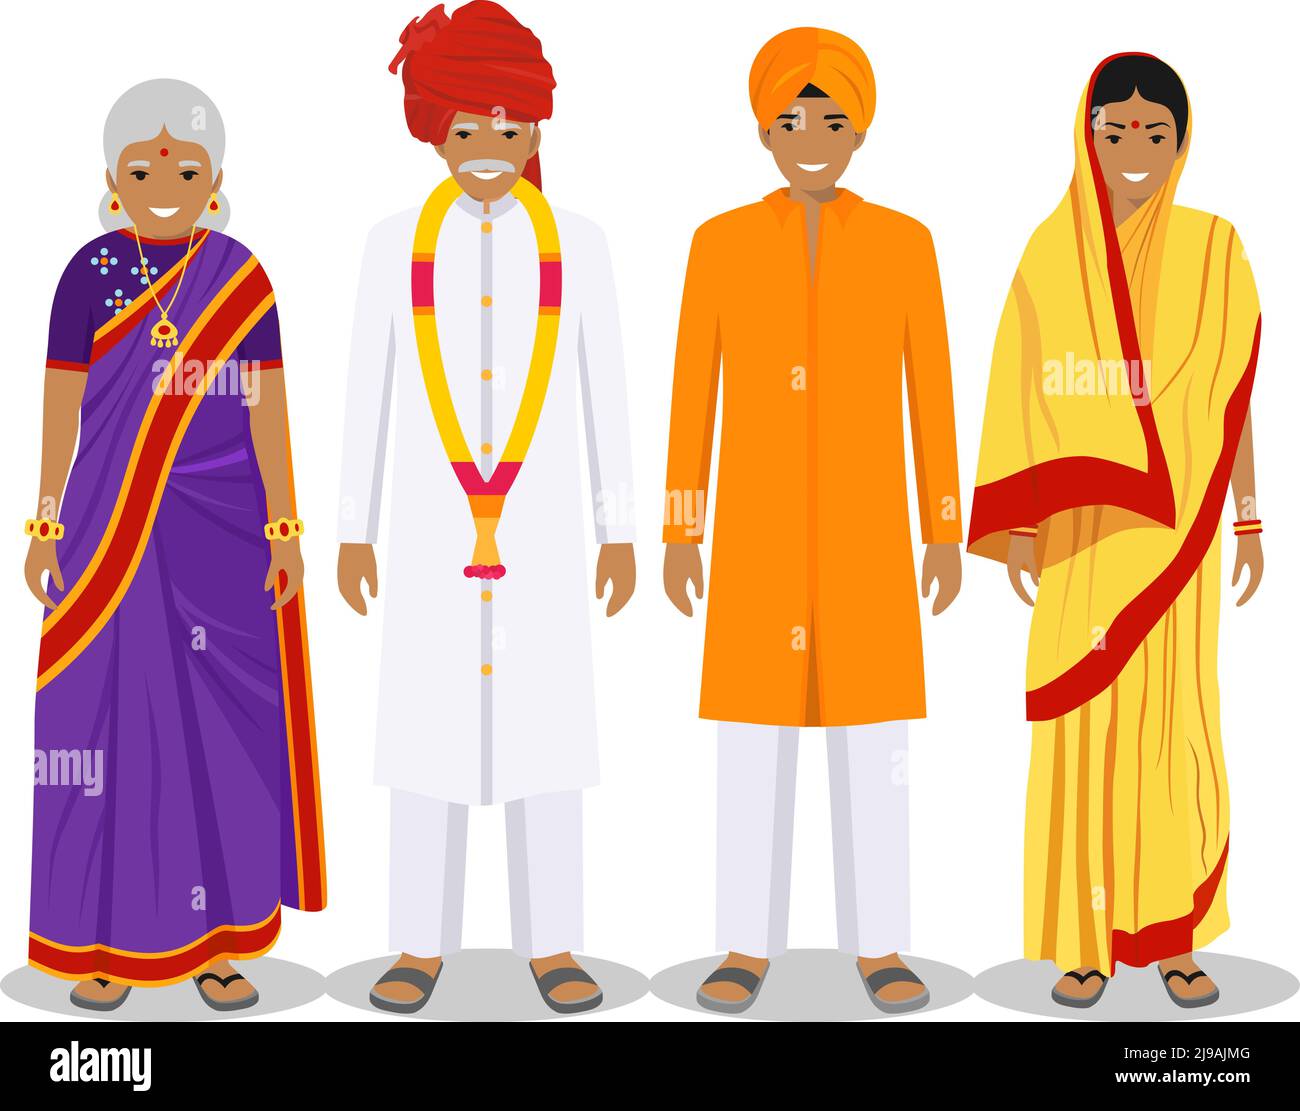 Générations homme. Les Indiens ont un père, une mère, une grand-mère, un grand-père debout ensemble dans des vêtements traditionnels. Concept social. Concept de famille. Illustration de Vecteur